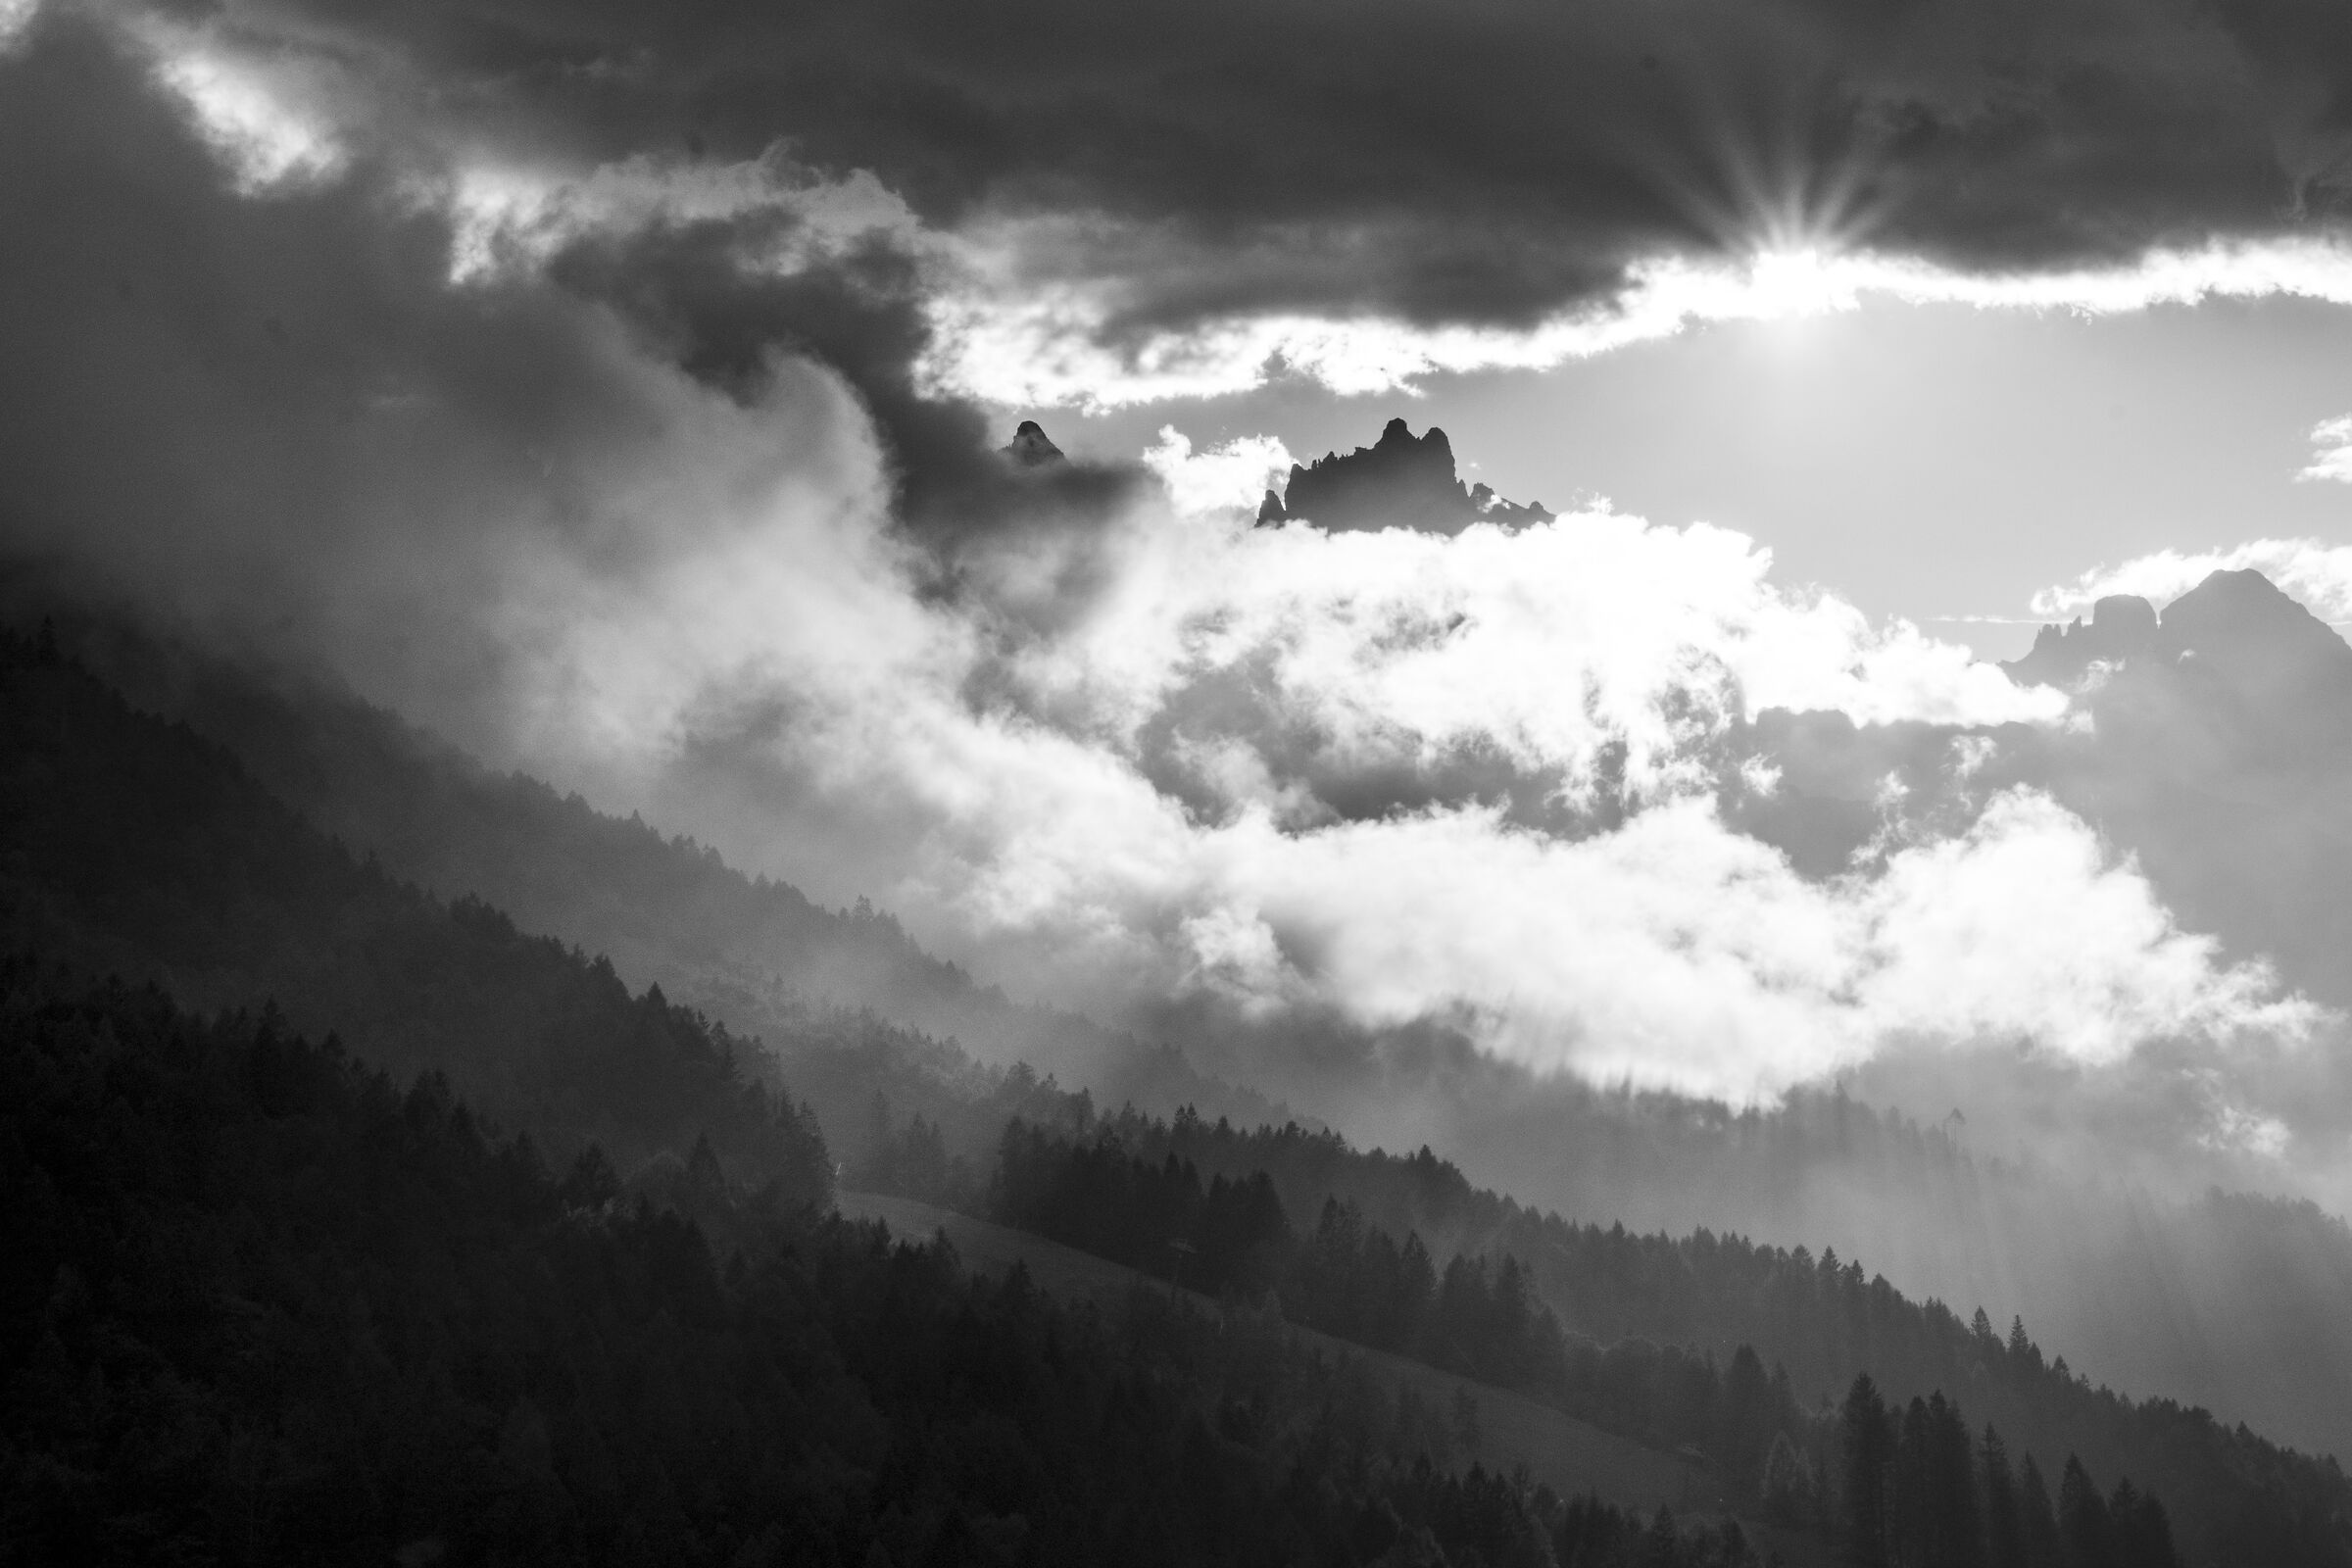 Dolomites Friulane at sunset...